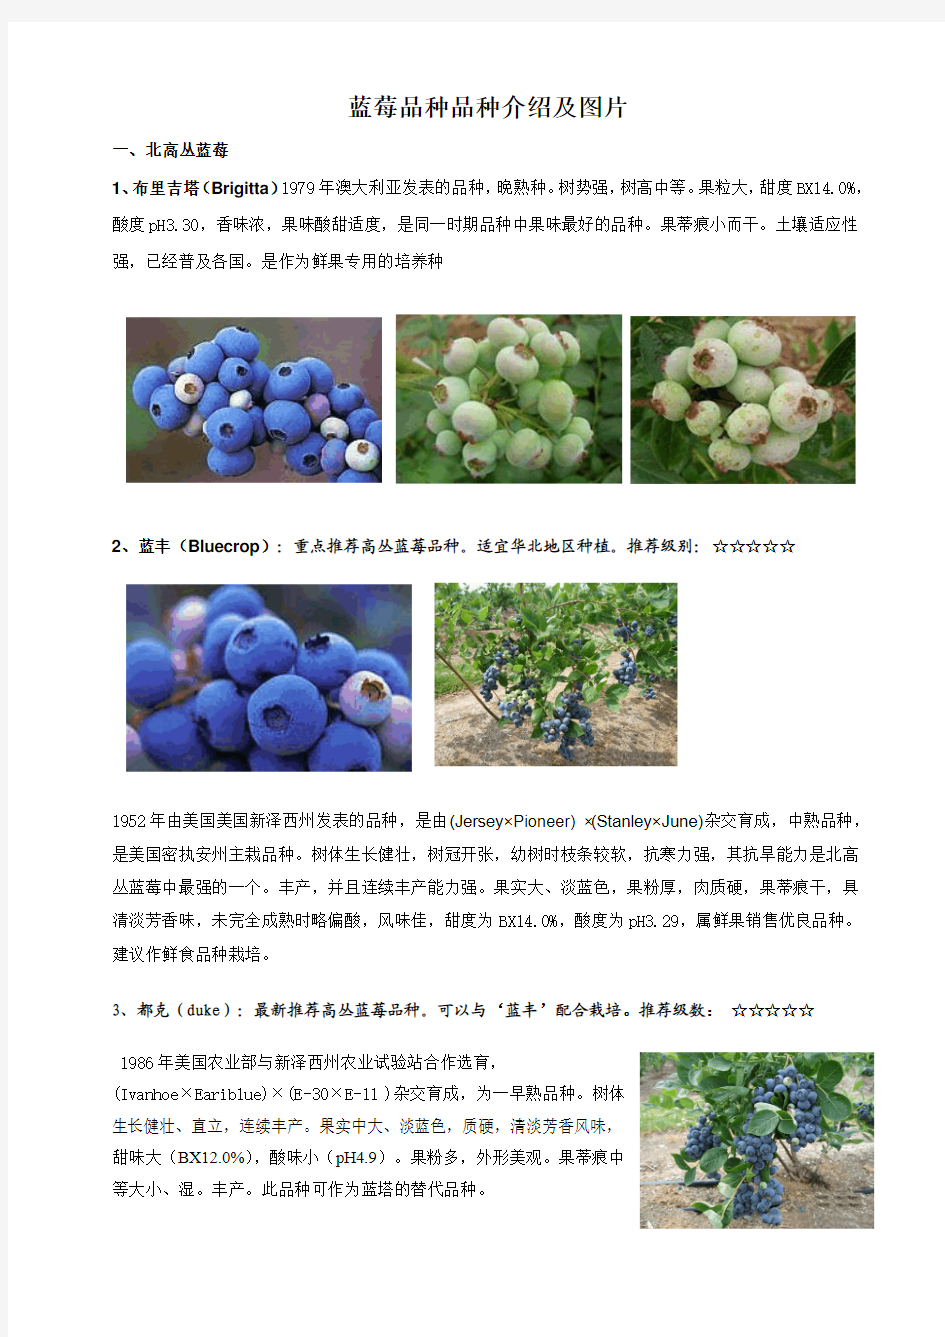 蓝莓品种品种介绍及图片(一)